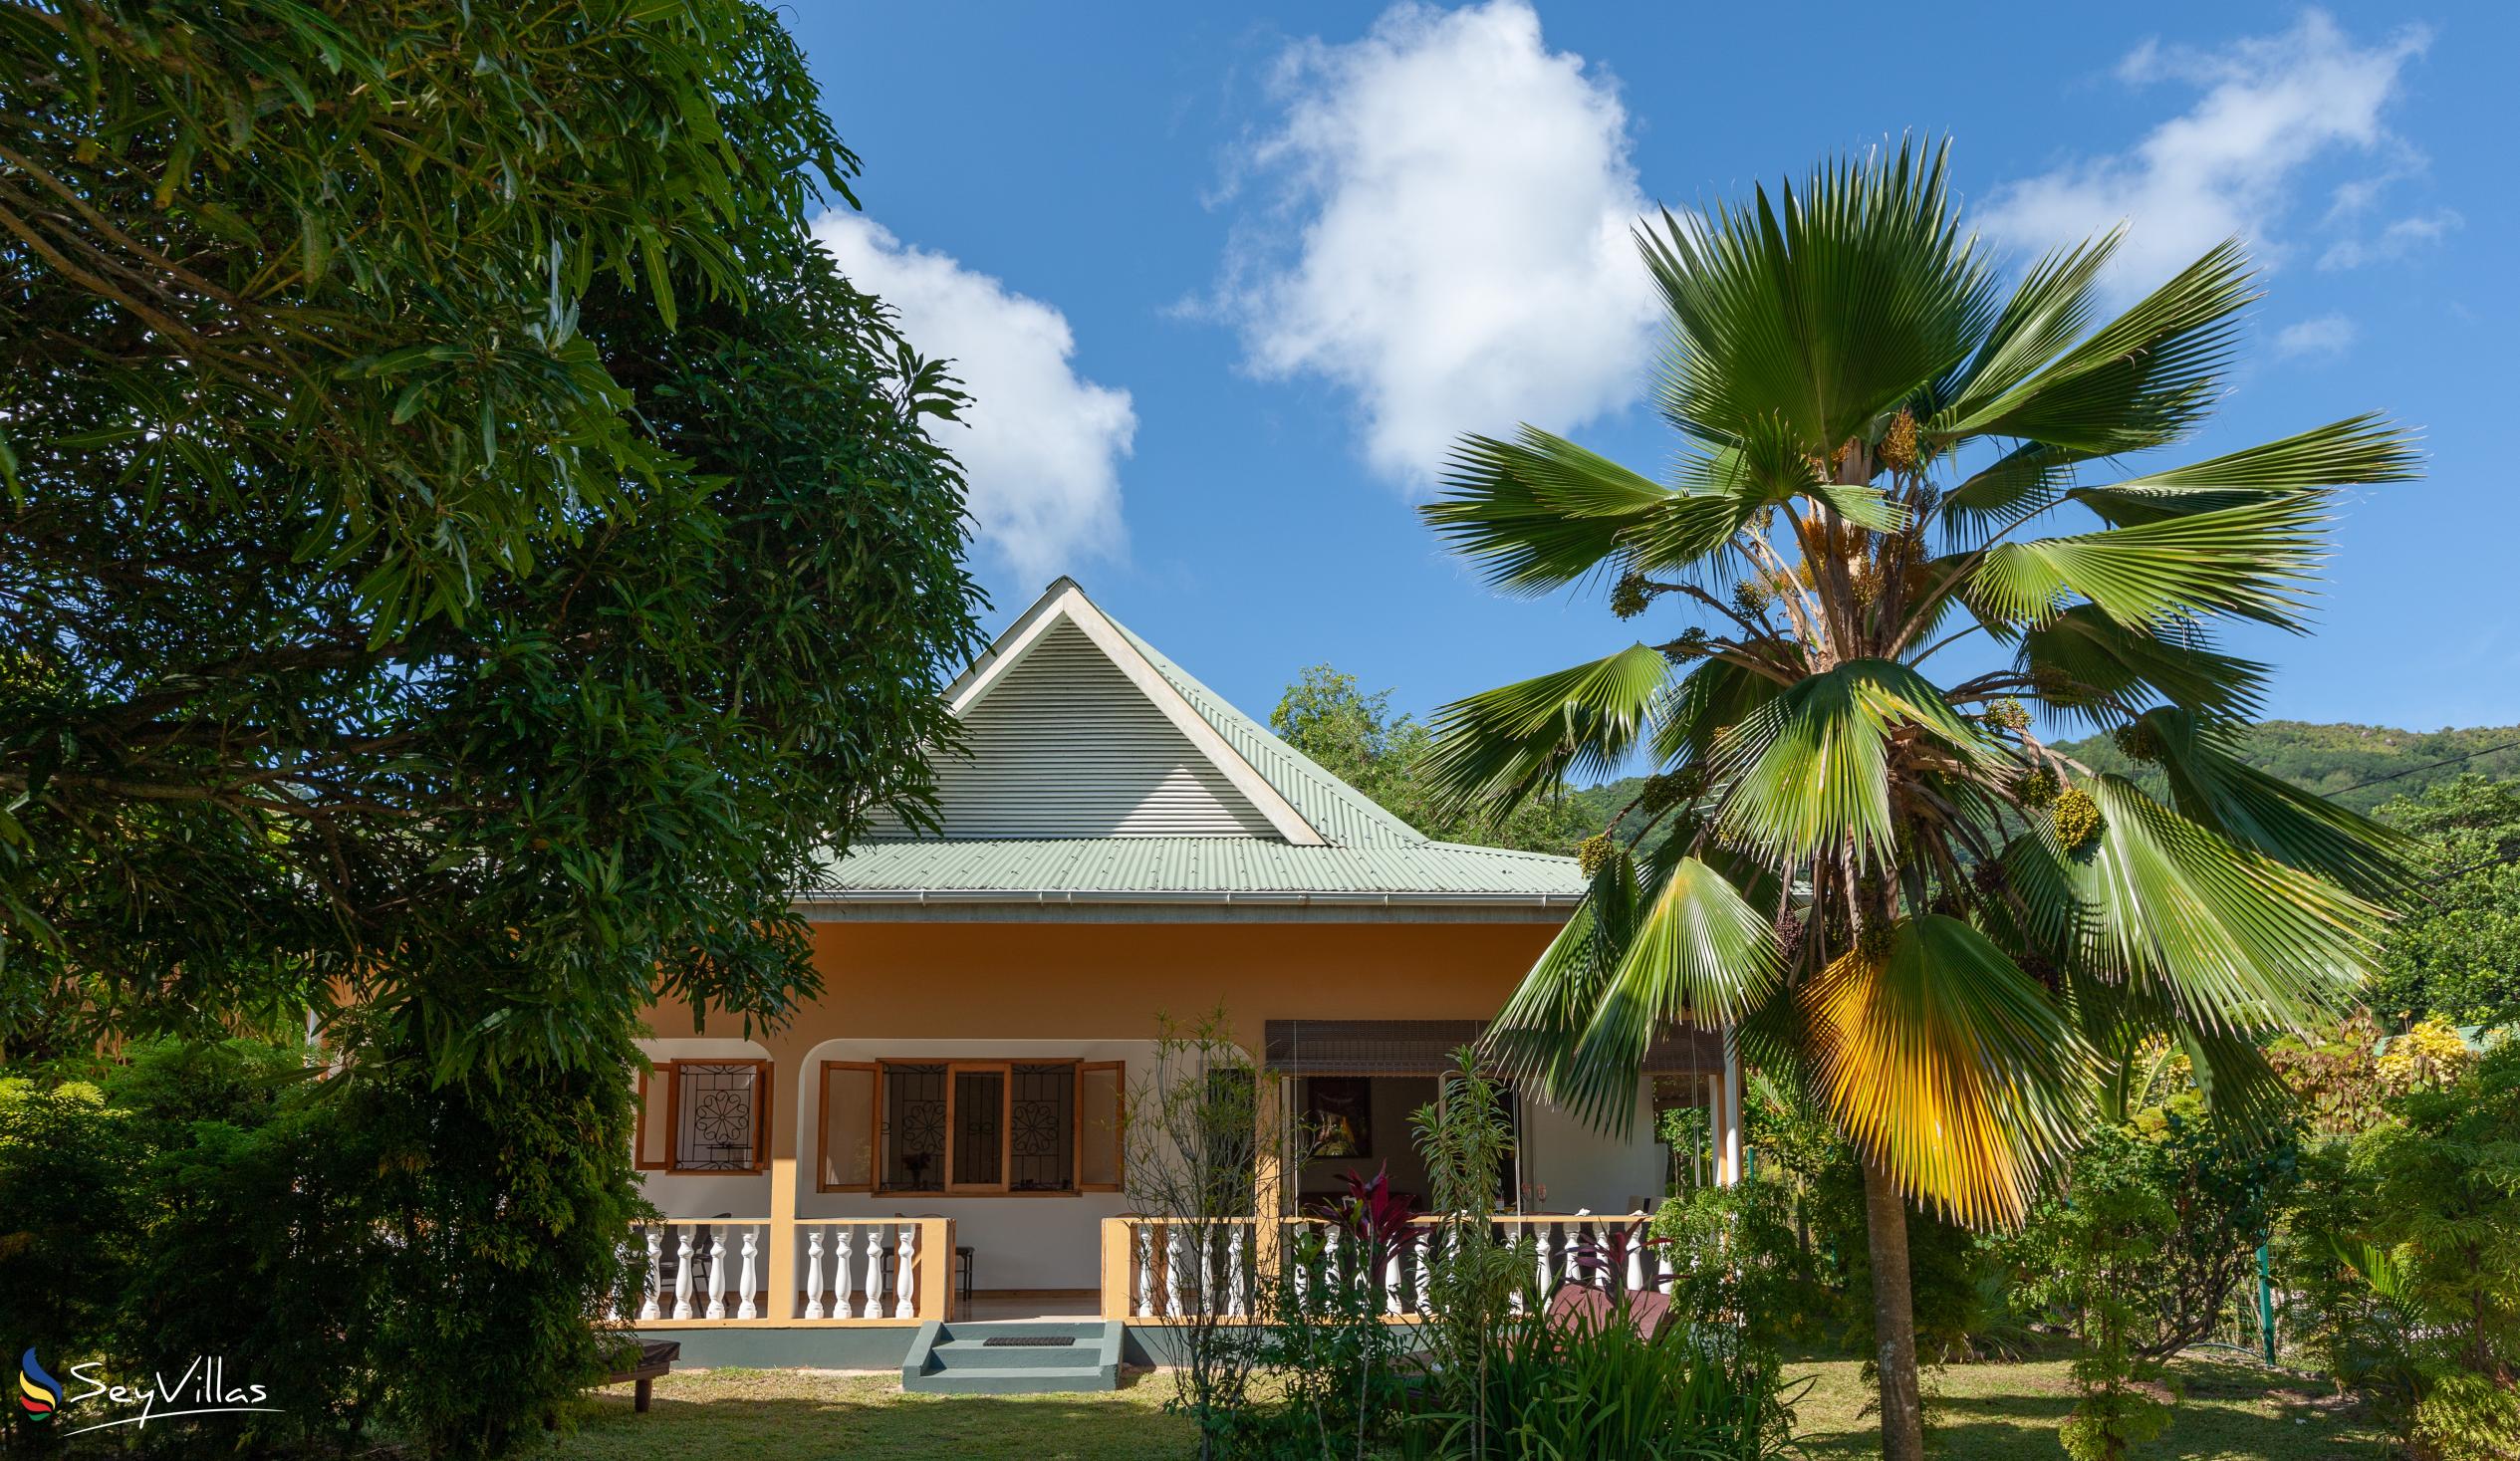 Foto 1: Chez Marlin - Esterno - Praslin (Seychelles)